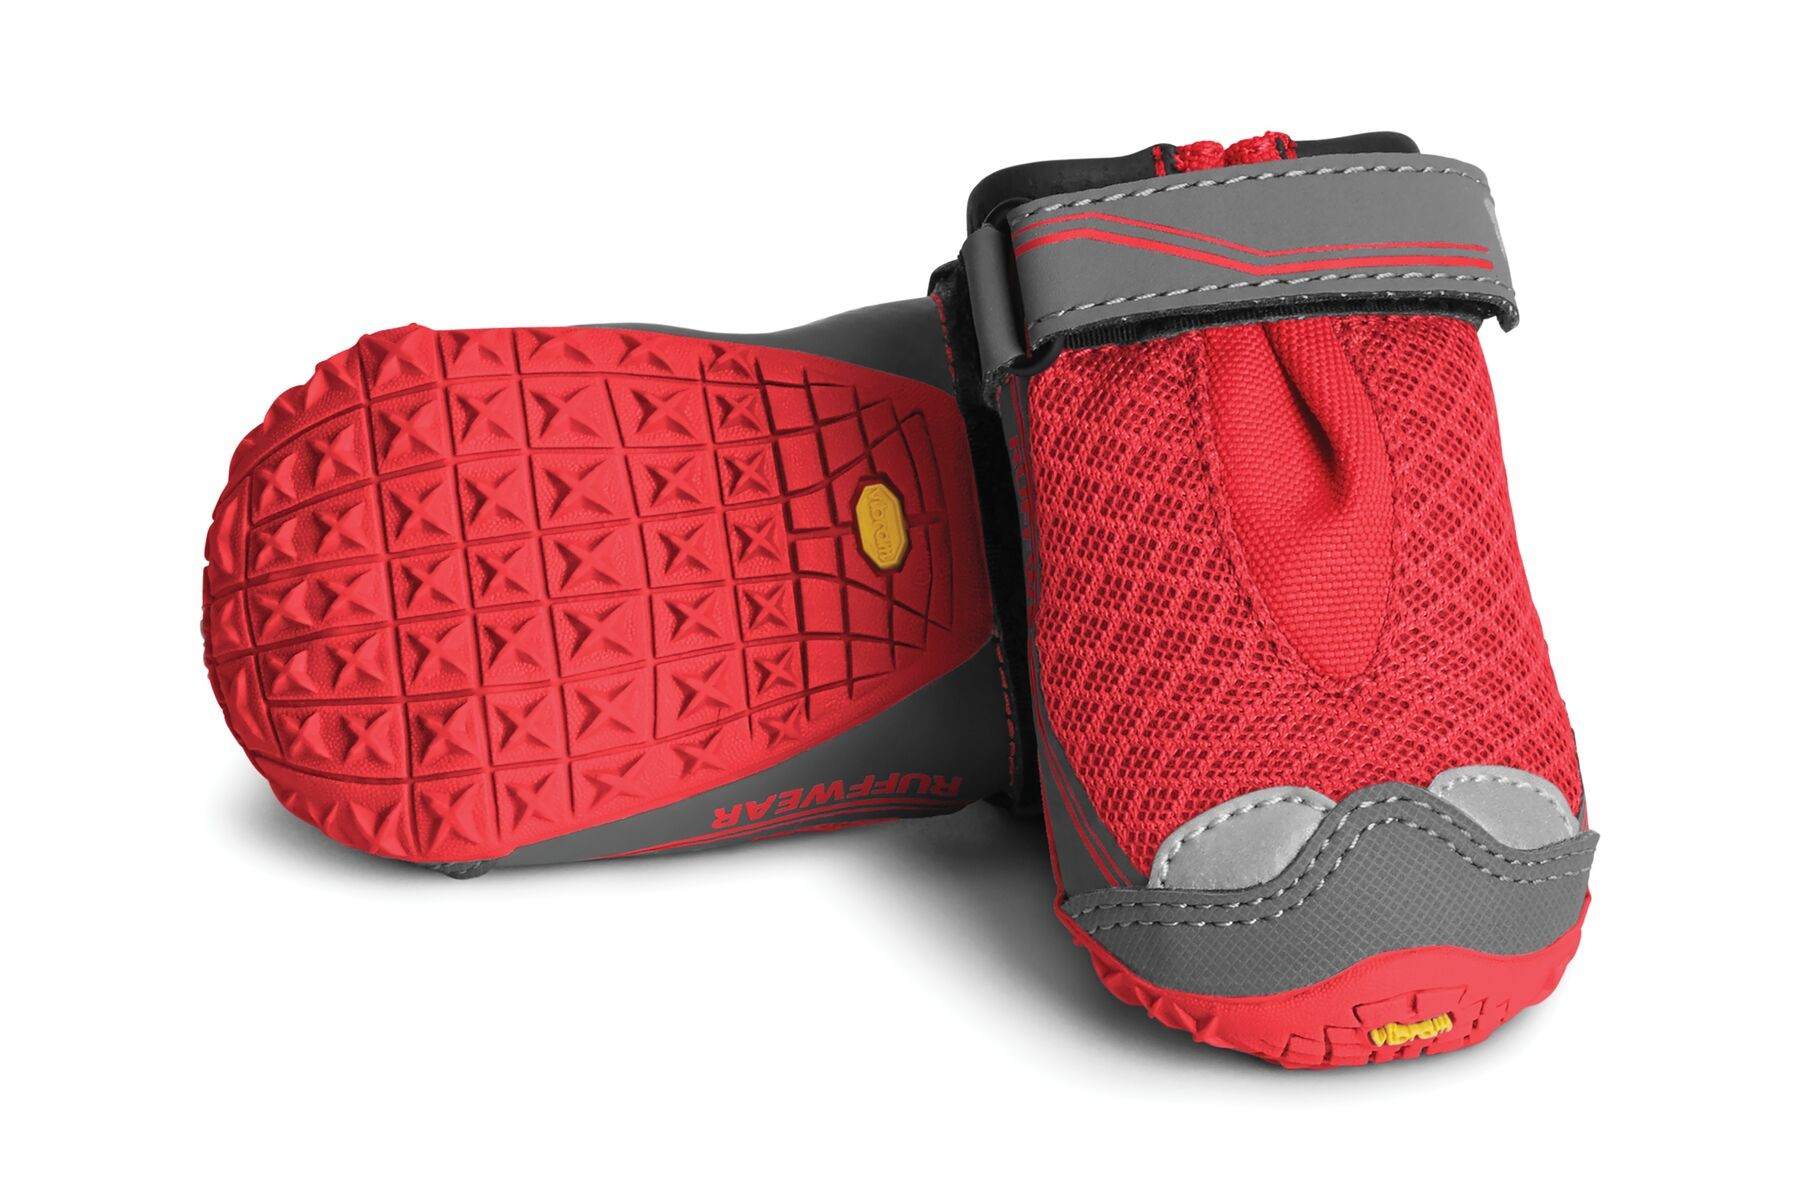 RUFFWEAR Par de botas para perros Grip Trex rojas - varias tallas